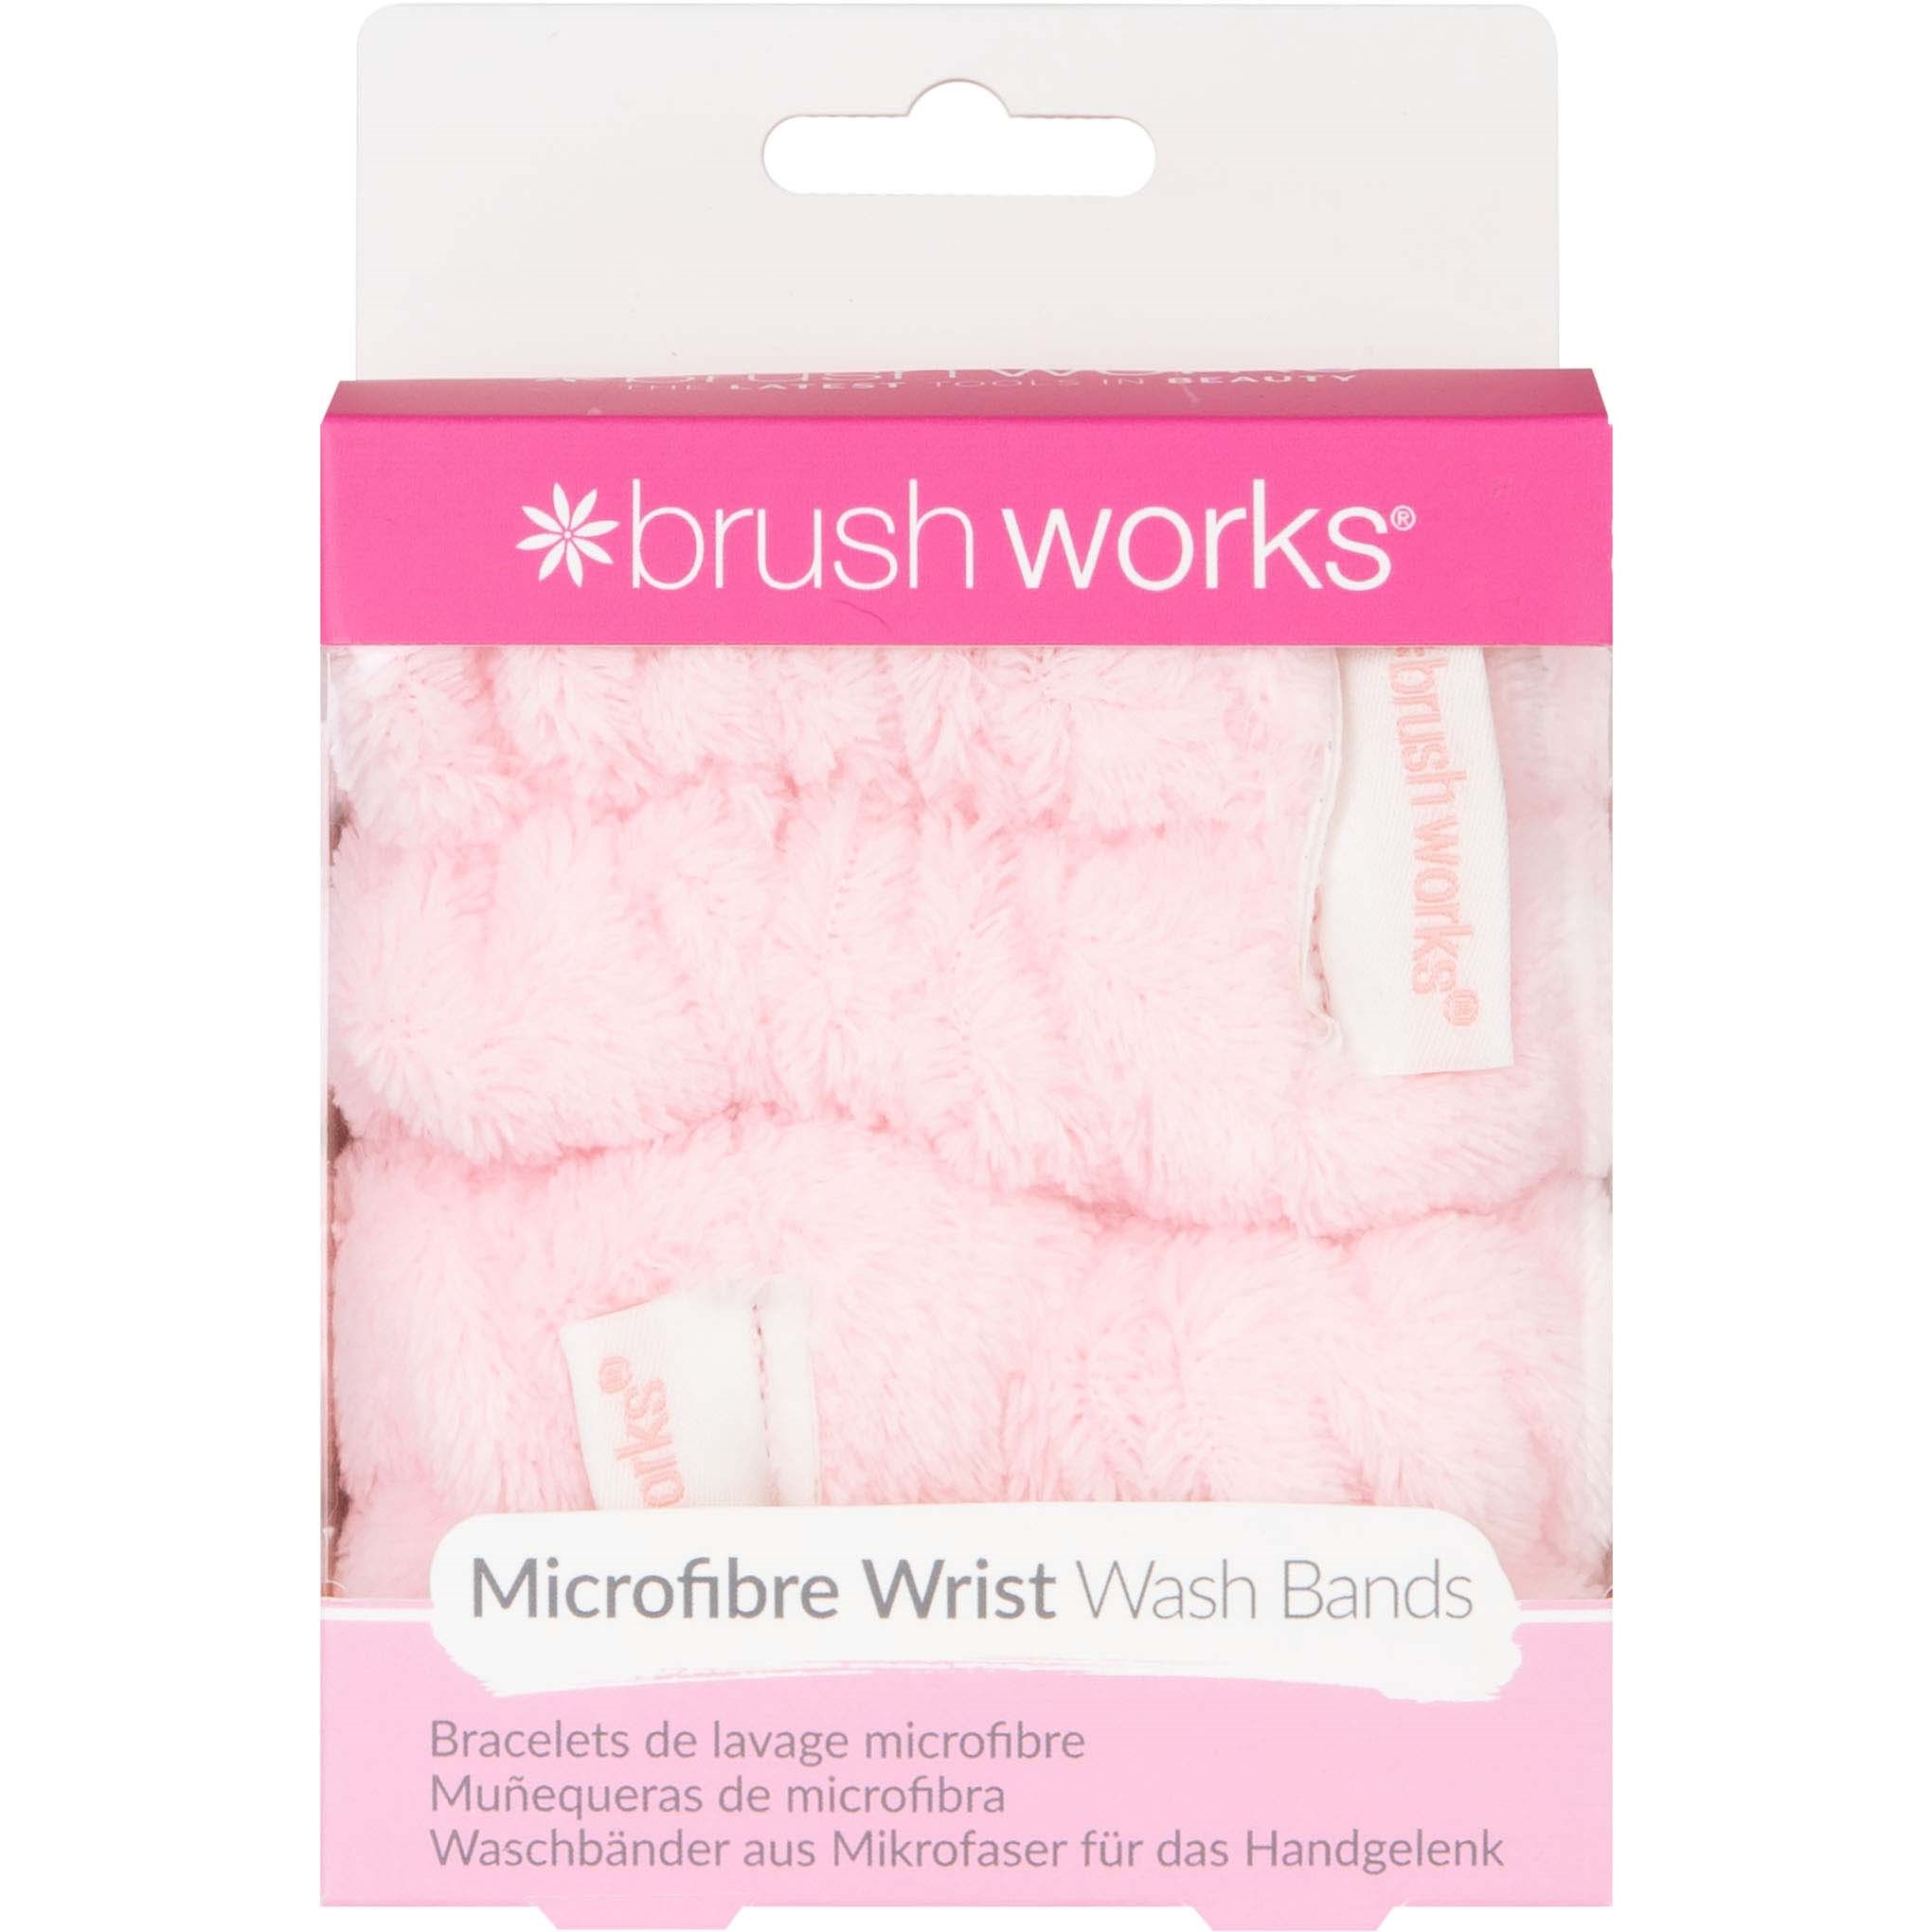 Brushworks Microfibre Wrist Wash Bands 2 Pack